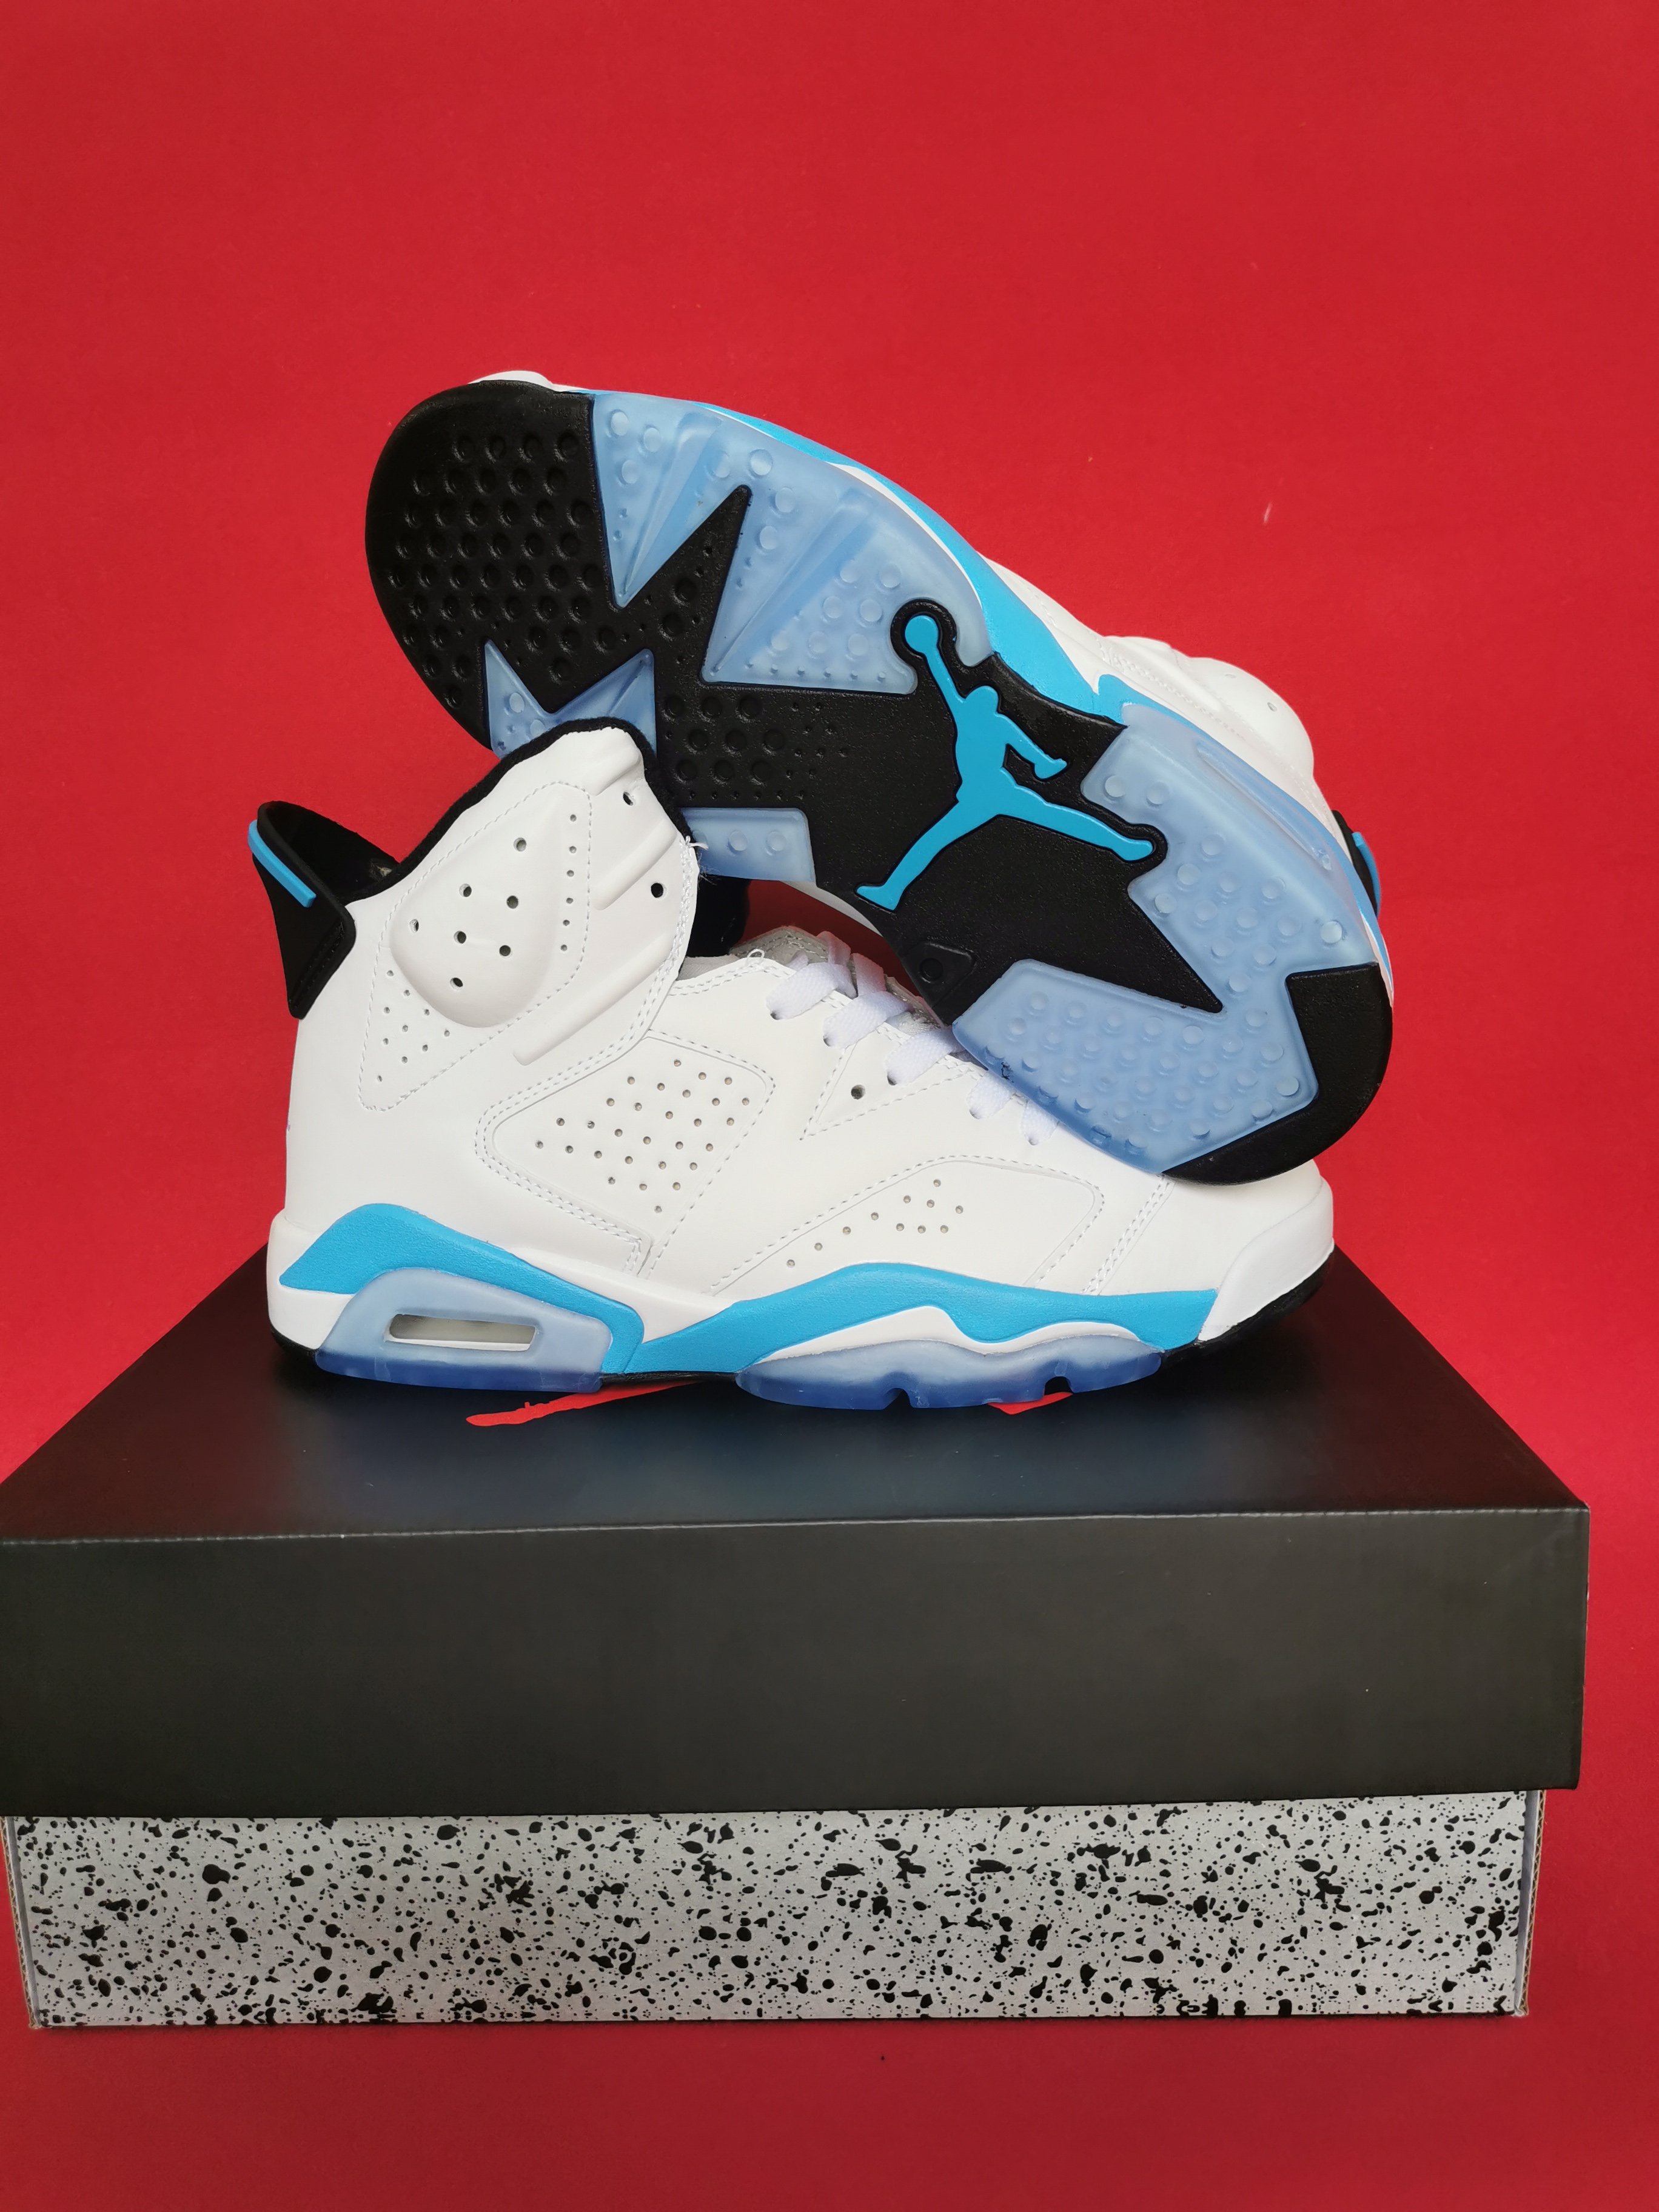 Air Jordan 6 OG White Baby Blue Shoes